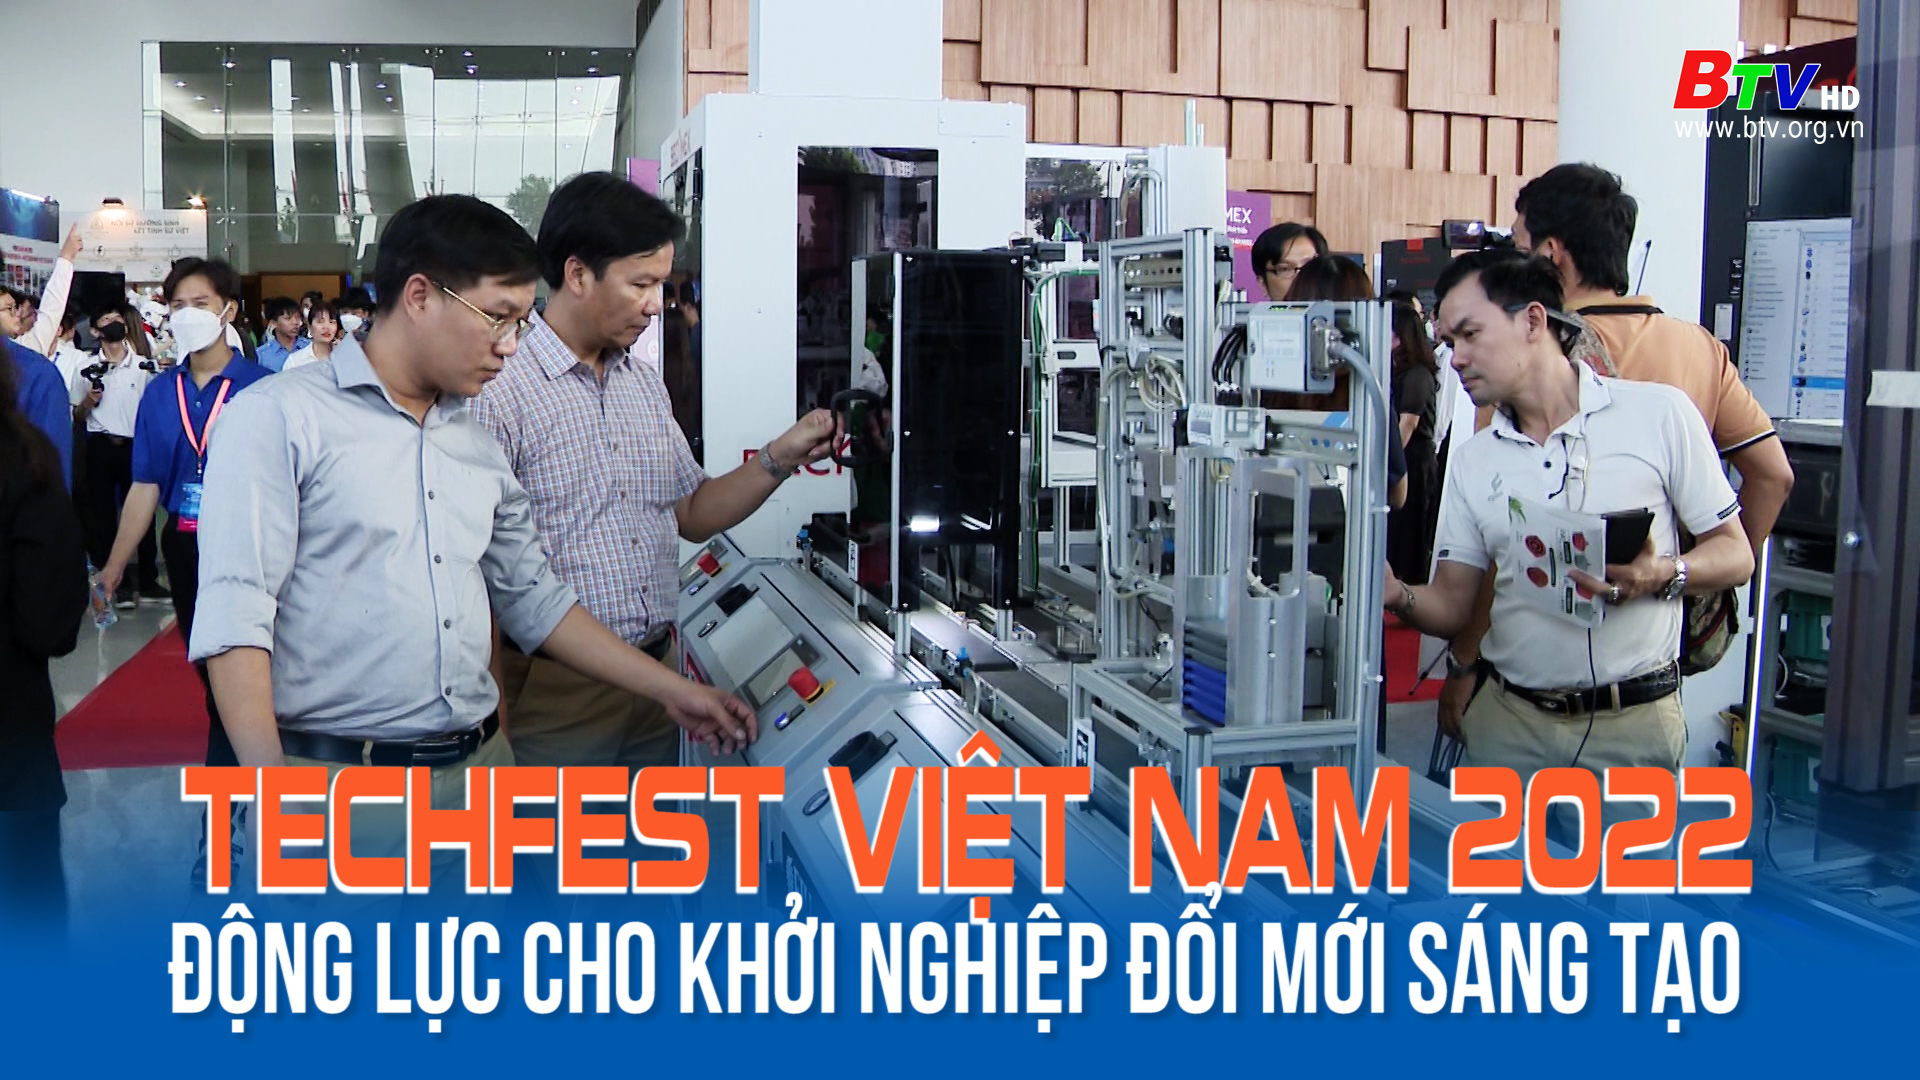 TECHFEST Việt Nam 2022 động lực cho khởi nghiệp đổi mới sáng tạo tại Bình Dương